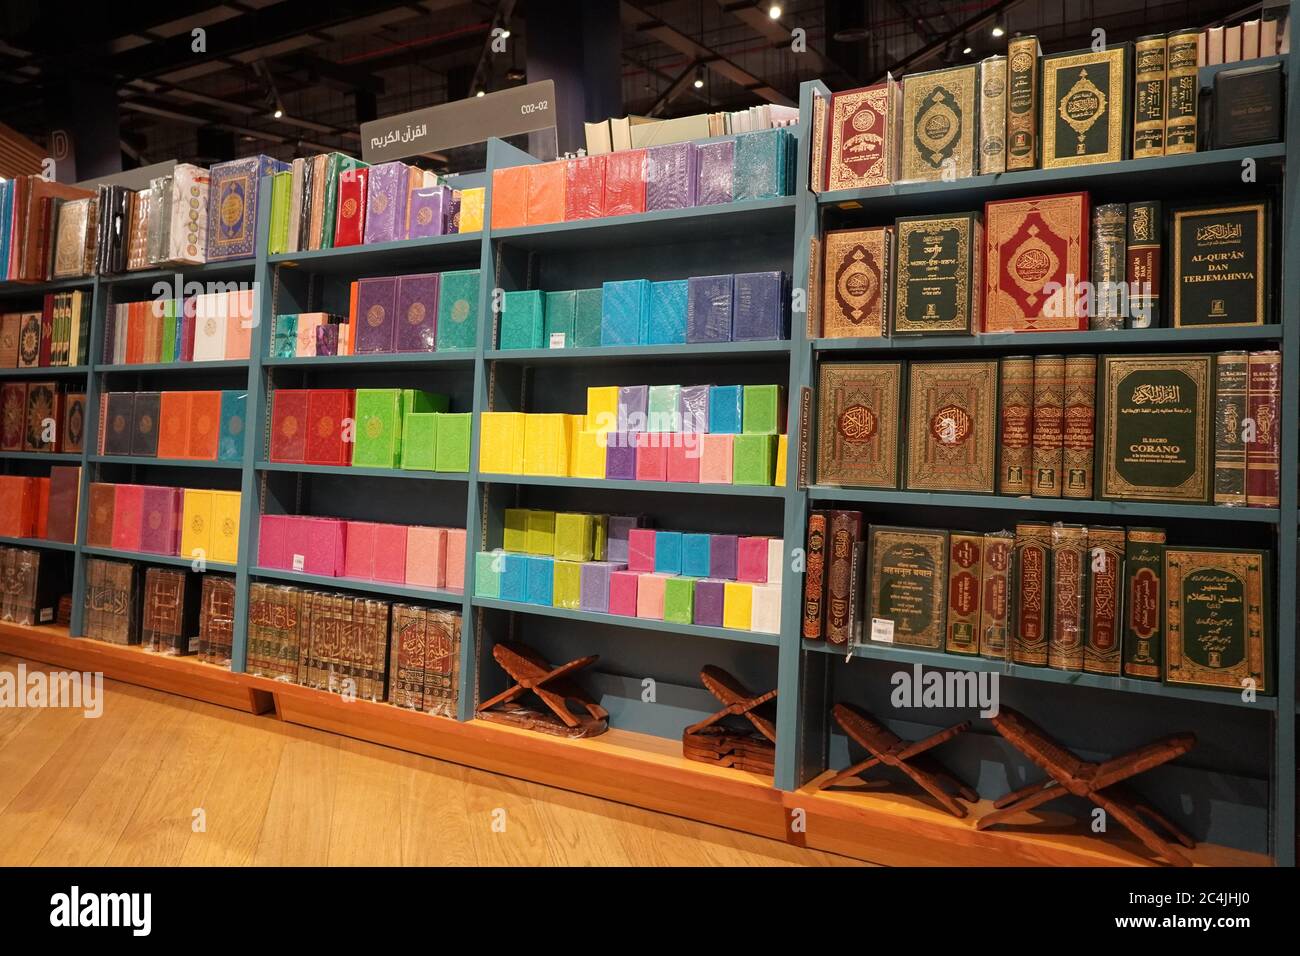 Quran-Stapel auf dem Regal. Quran religiösen Buch im Regal zum Verkauf gestapelt. In Verschiedenen Sprachen in einem Buchladen erhältlich. Islamische Bücher zum Verkauf, A Stockfoto